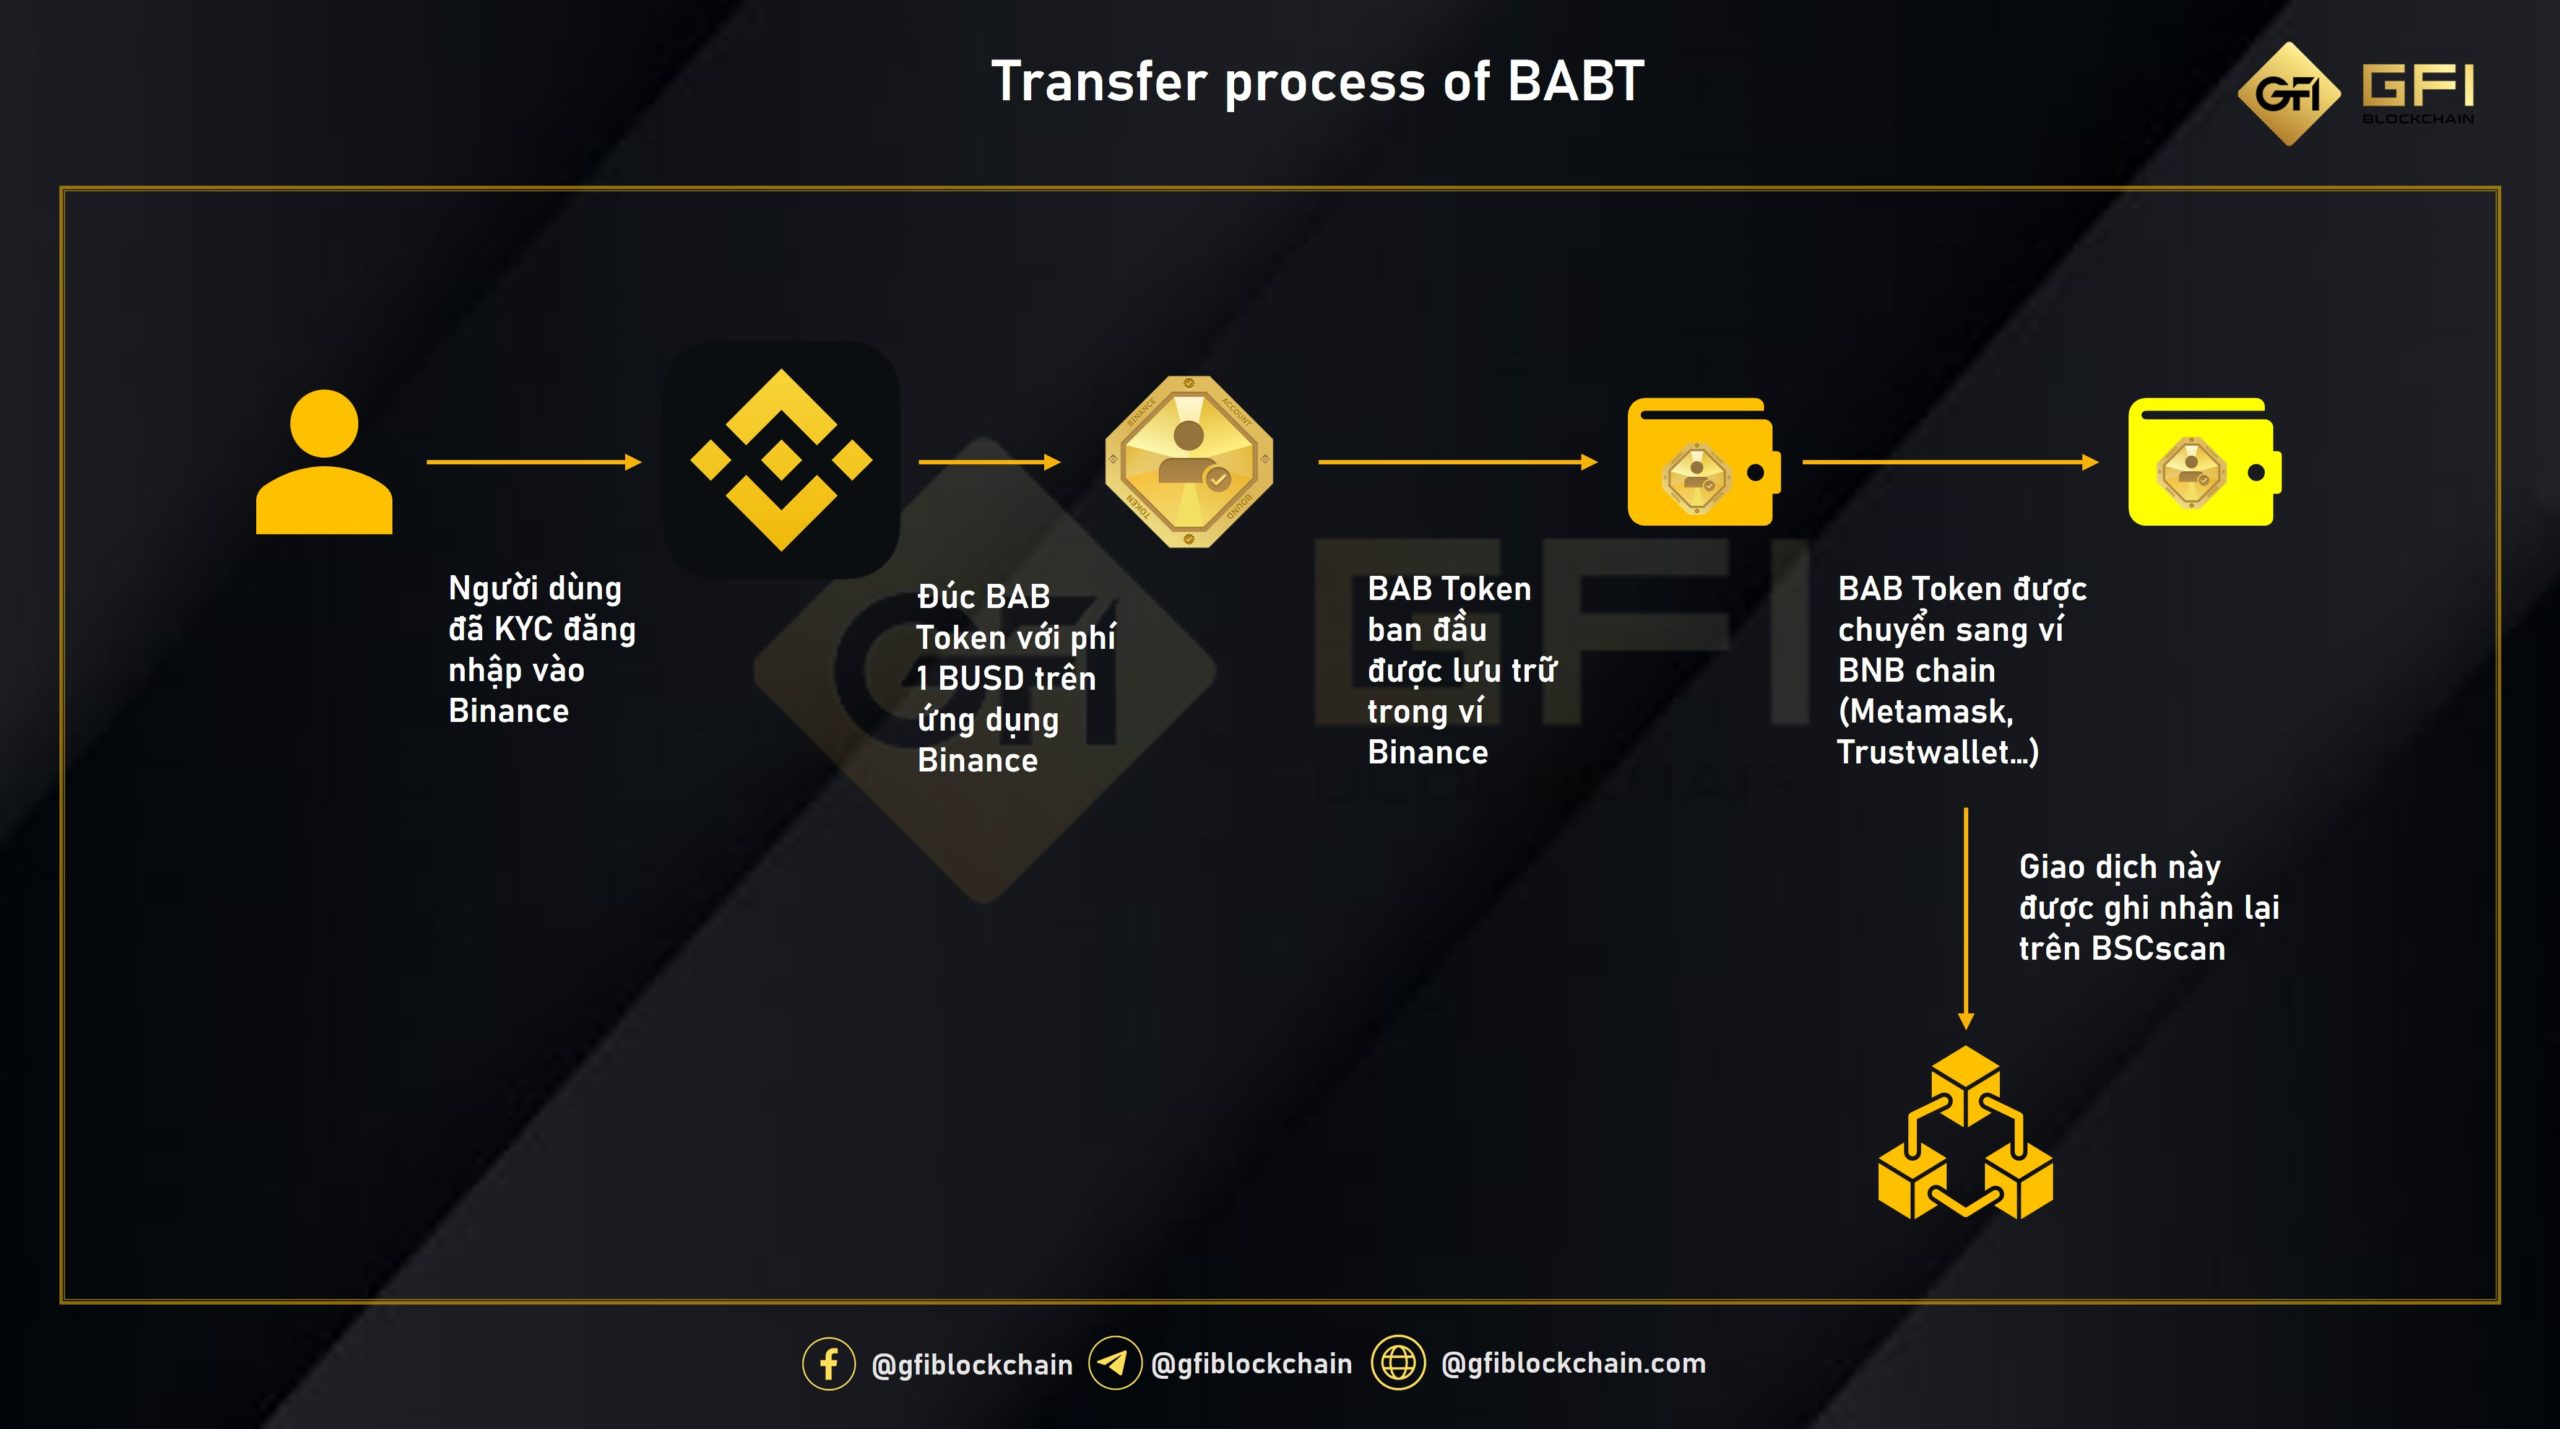 Quá trình chuyển BAB từ Binance sang BNB chain